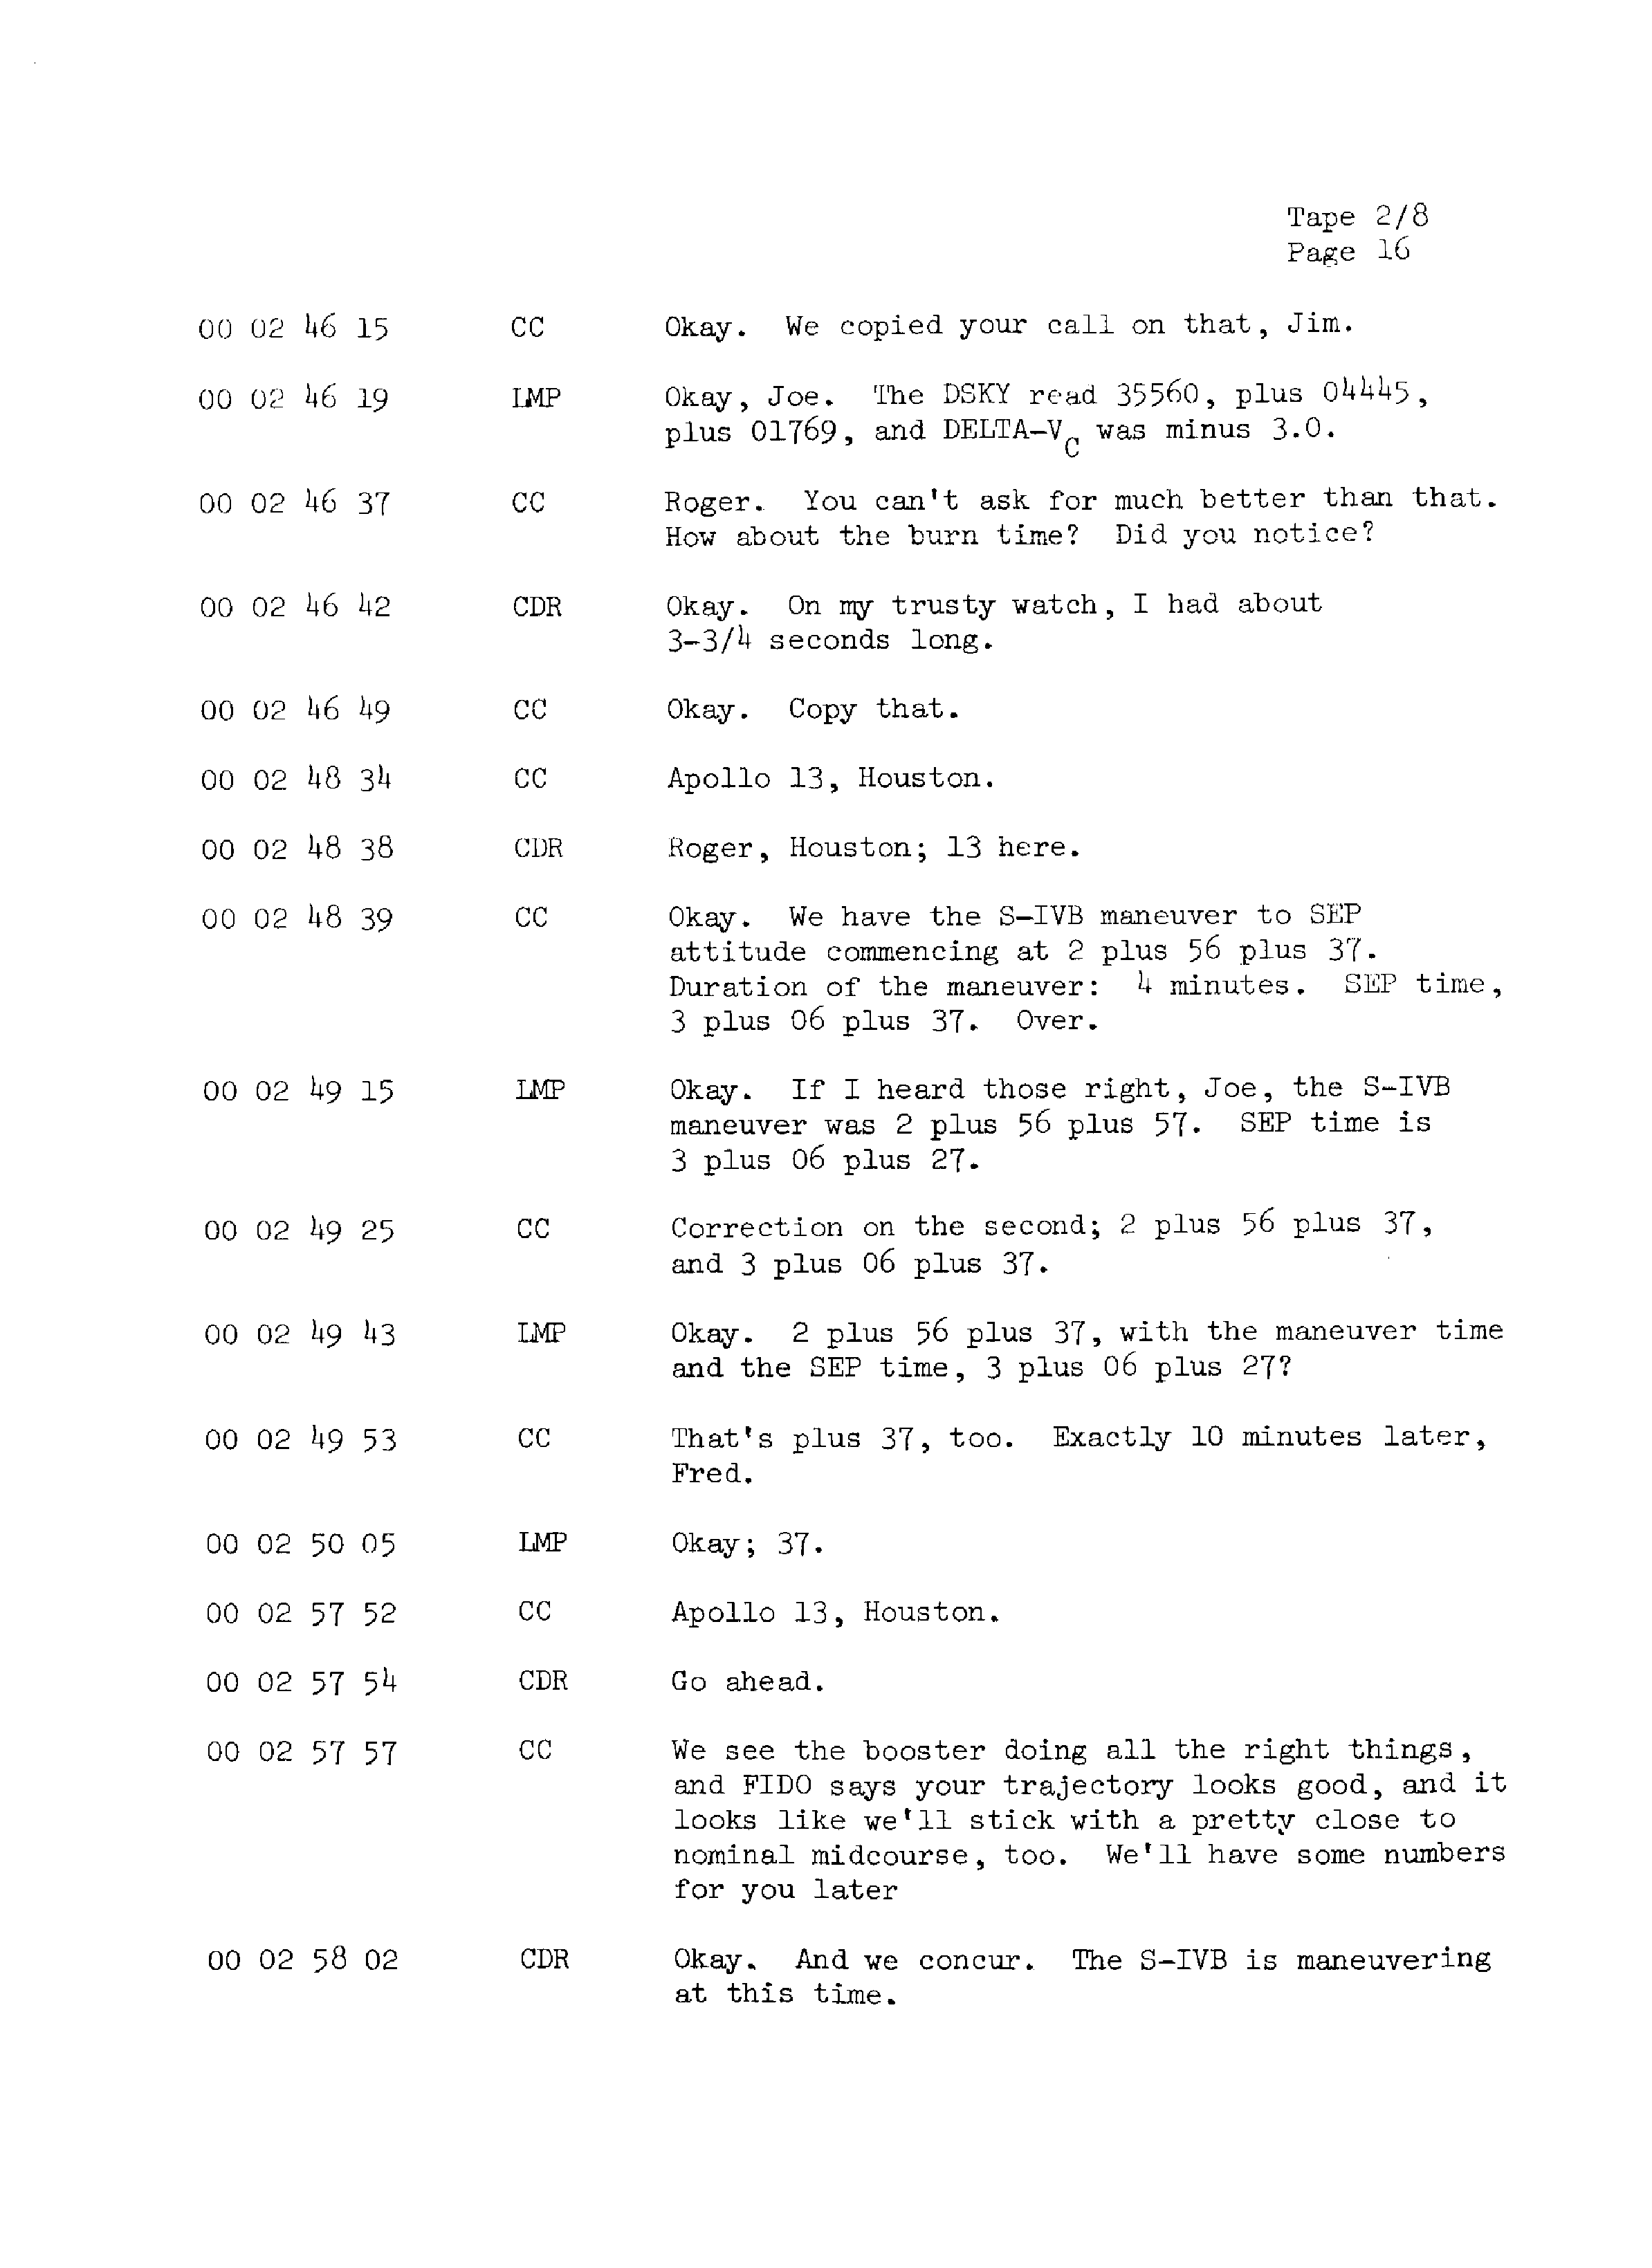 Page 23 of Apollo 13’s original transcript